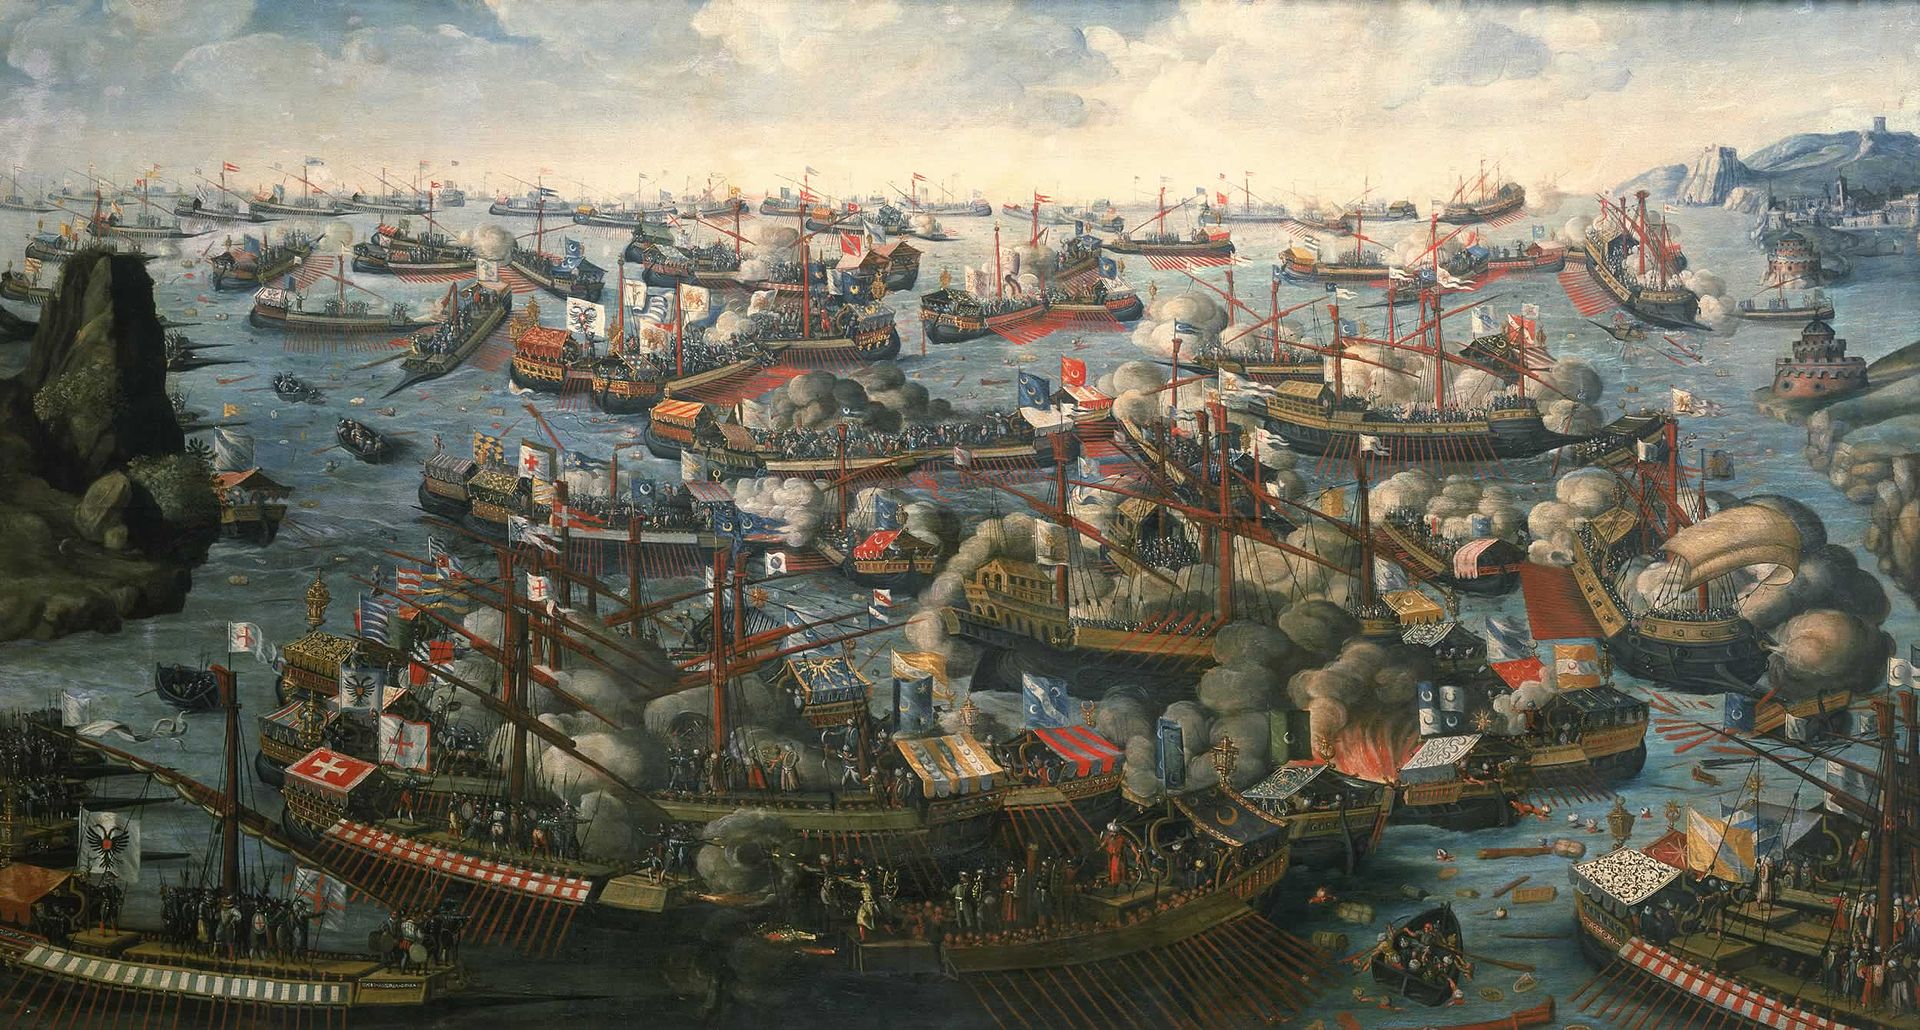 LEPANTÓ Battle of Lepanto 1571